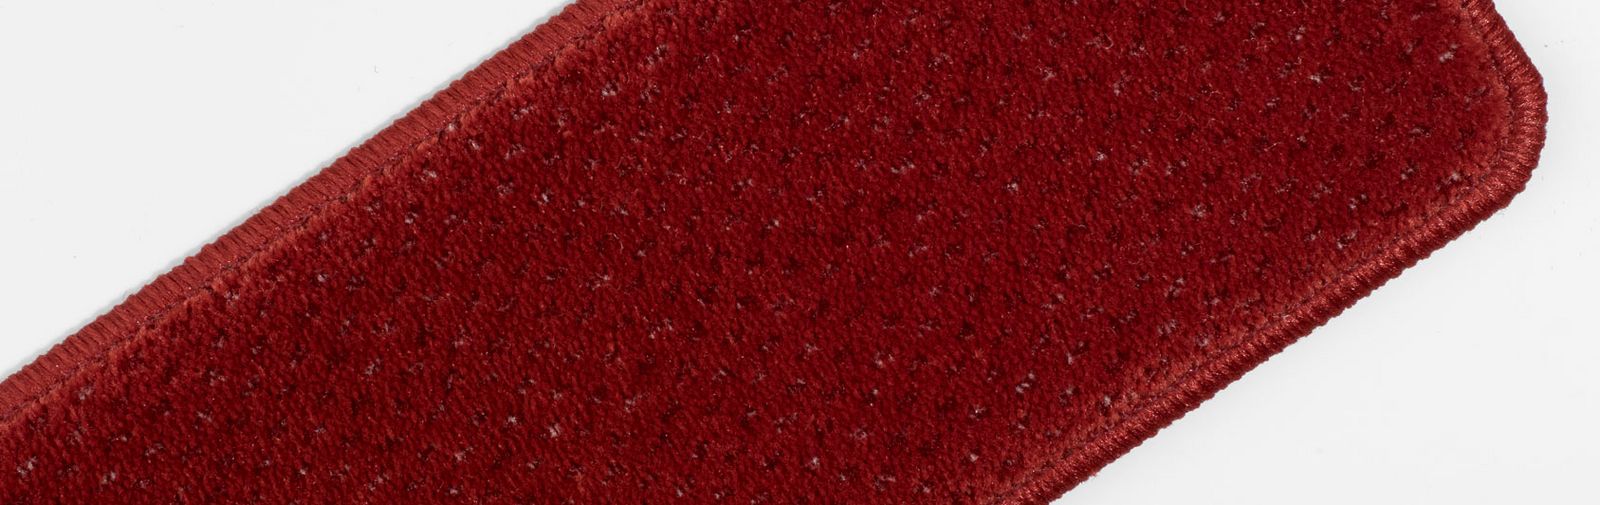 exemple agenouilloir velours qualité structuré couleur code 2401 couleur rouge